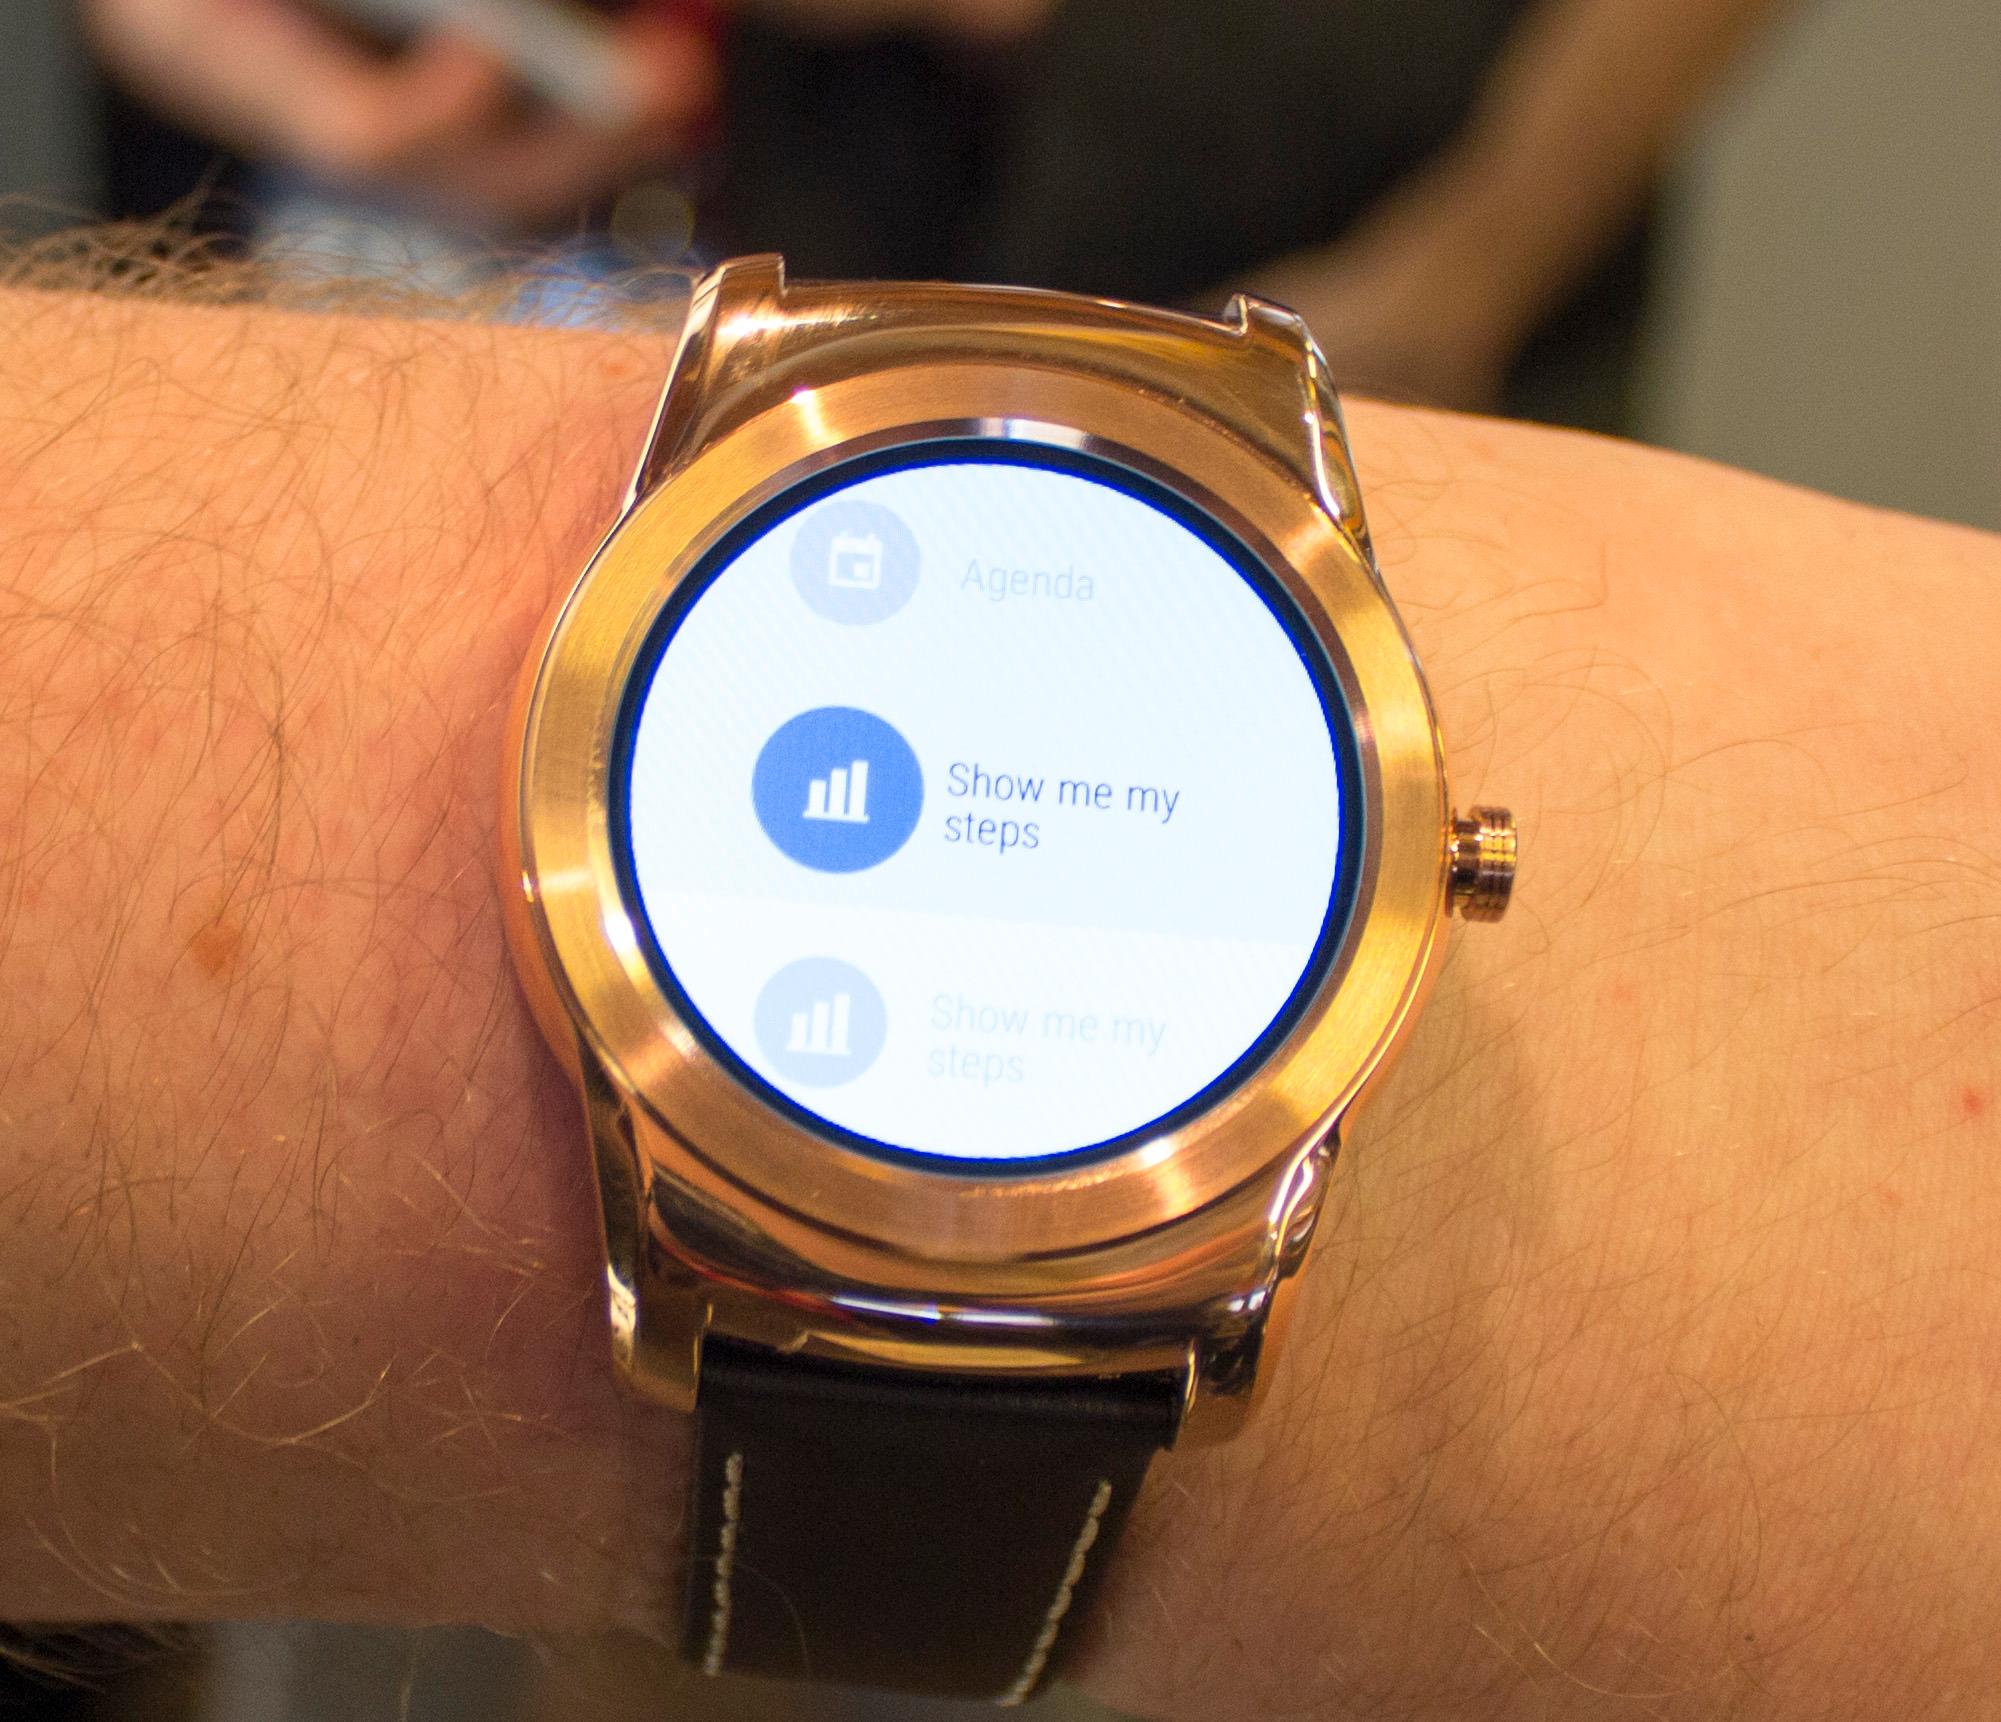 Watch Urbane kjører Android Wear, og vi opplever den som litt lite intuitiv i bruk. Foto: Finn Jarle Kvalheim, Tek.no